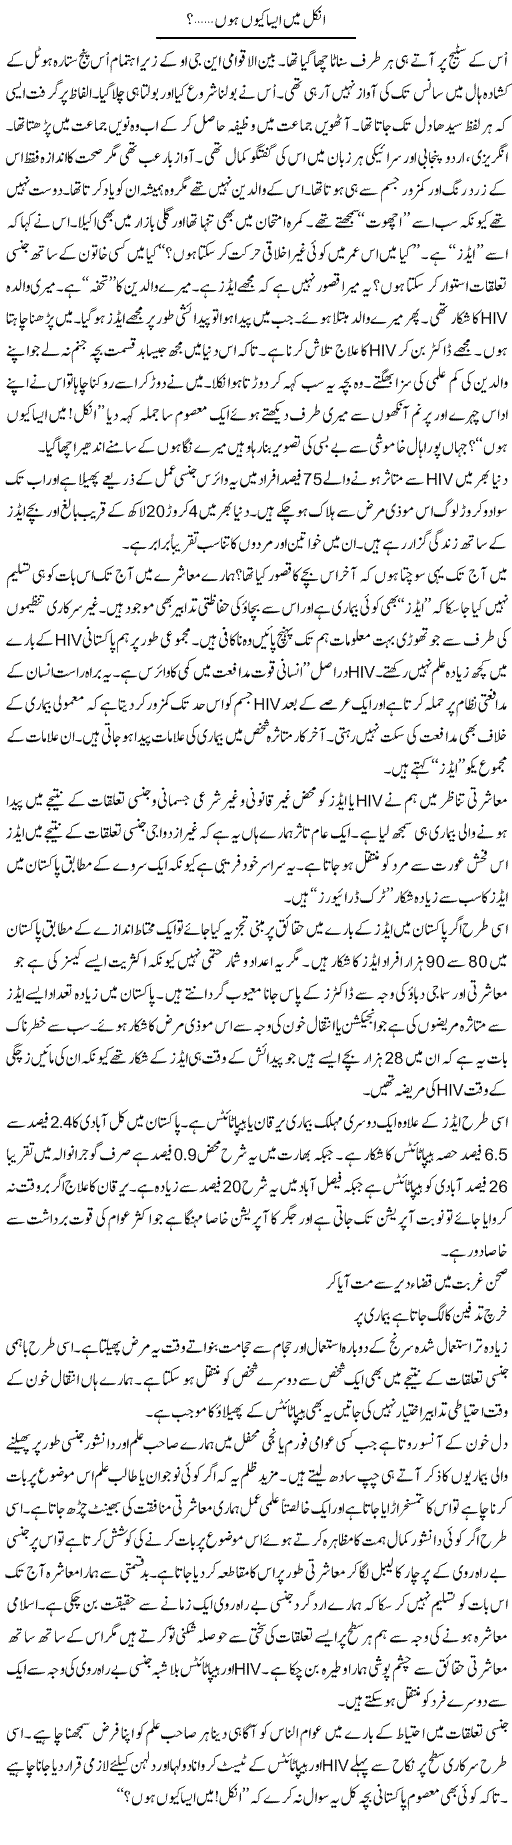 Uncle Main Aisa Q Hun | Syed Zeeshan Haider | Daily Urdu Columns